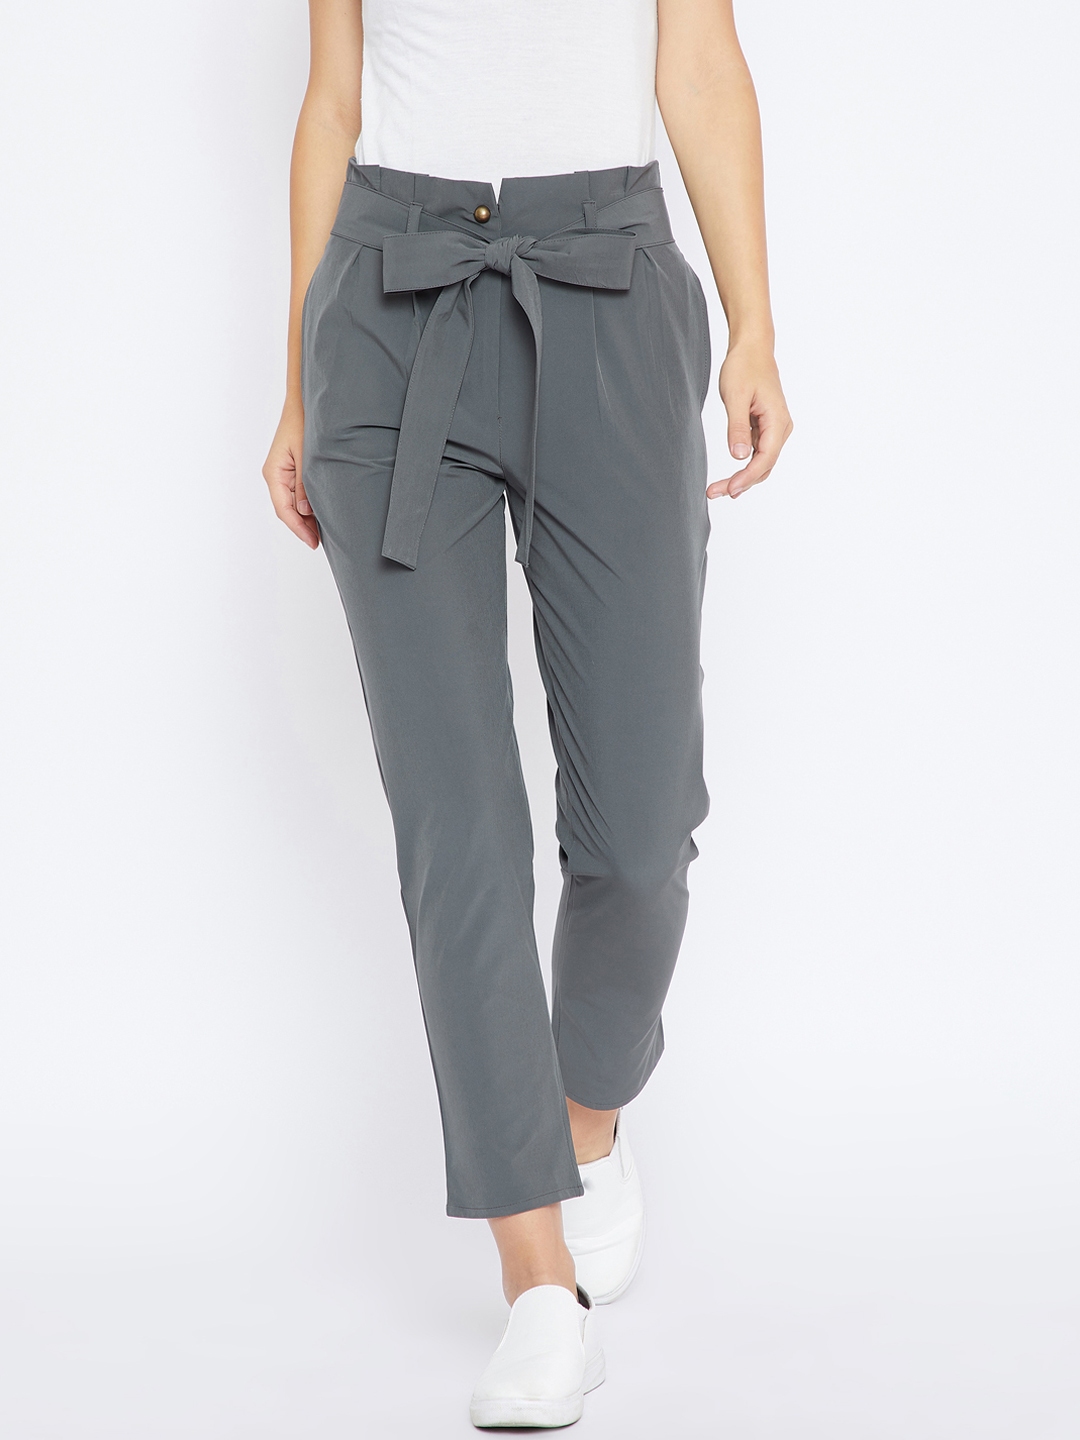 Buy Grey Trousers  Pants for Women by Kibo Online  Ajiocom